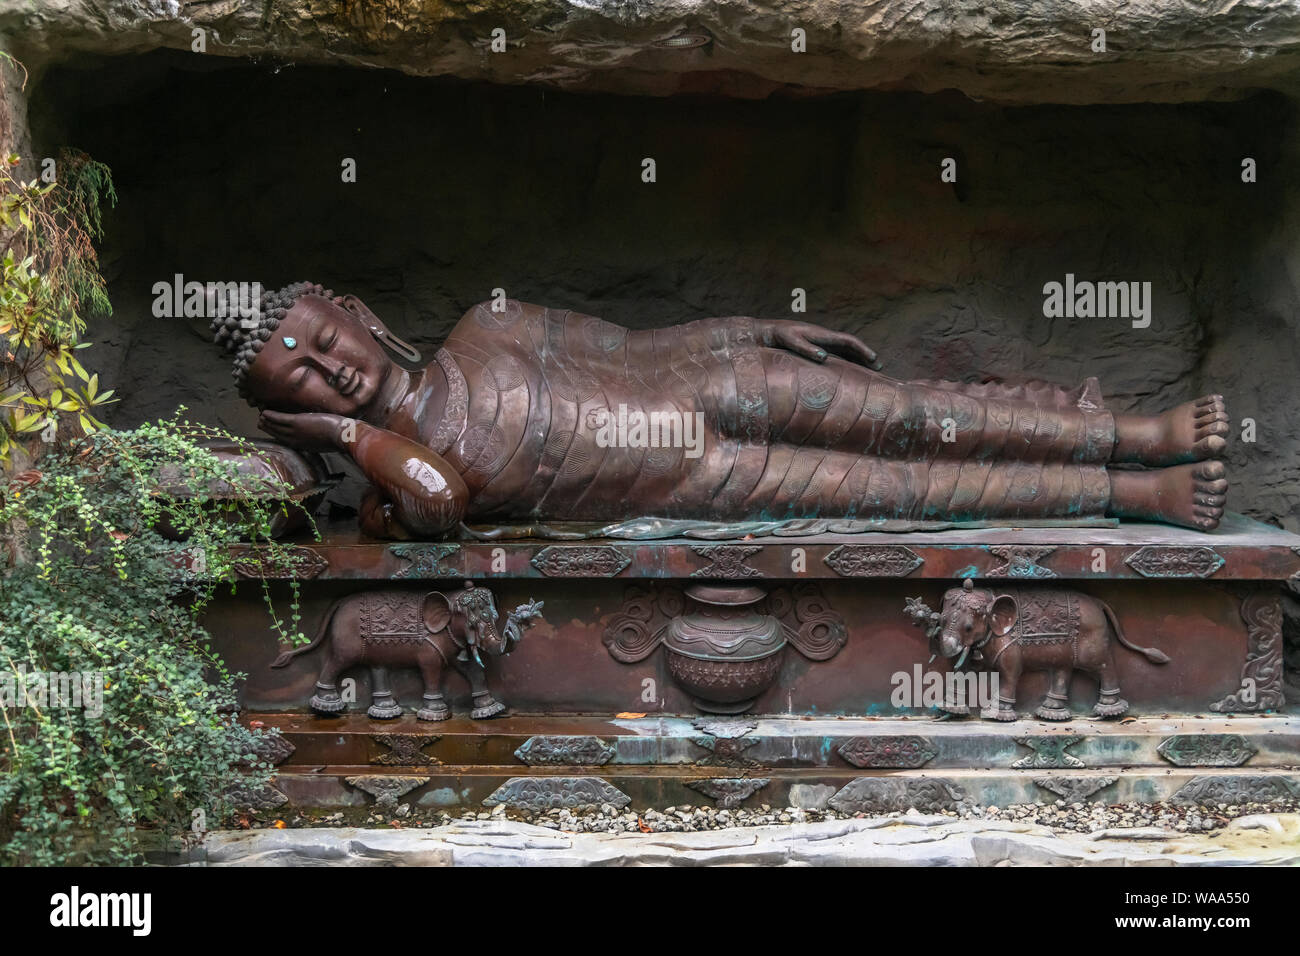 Der grösste Buddha liegende außerhalb von Asien in der Botanika di Brema Foto Stock